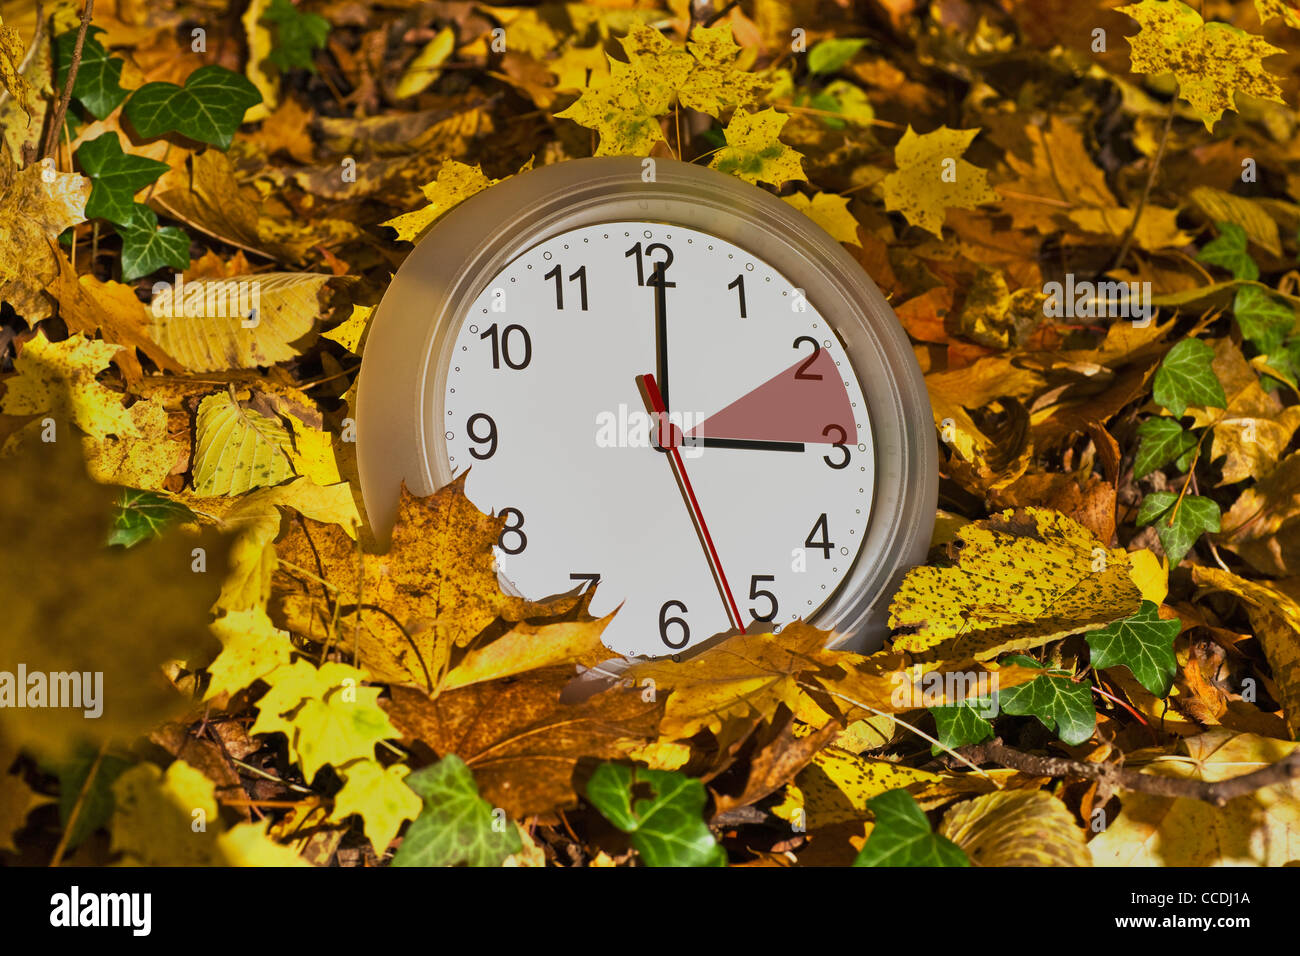 Un orologio da parete in foglie colorate. L'orologio ha un contrassegno rosso tra due e tre. Foto Stock